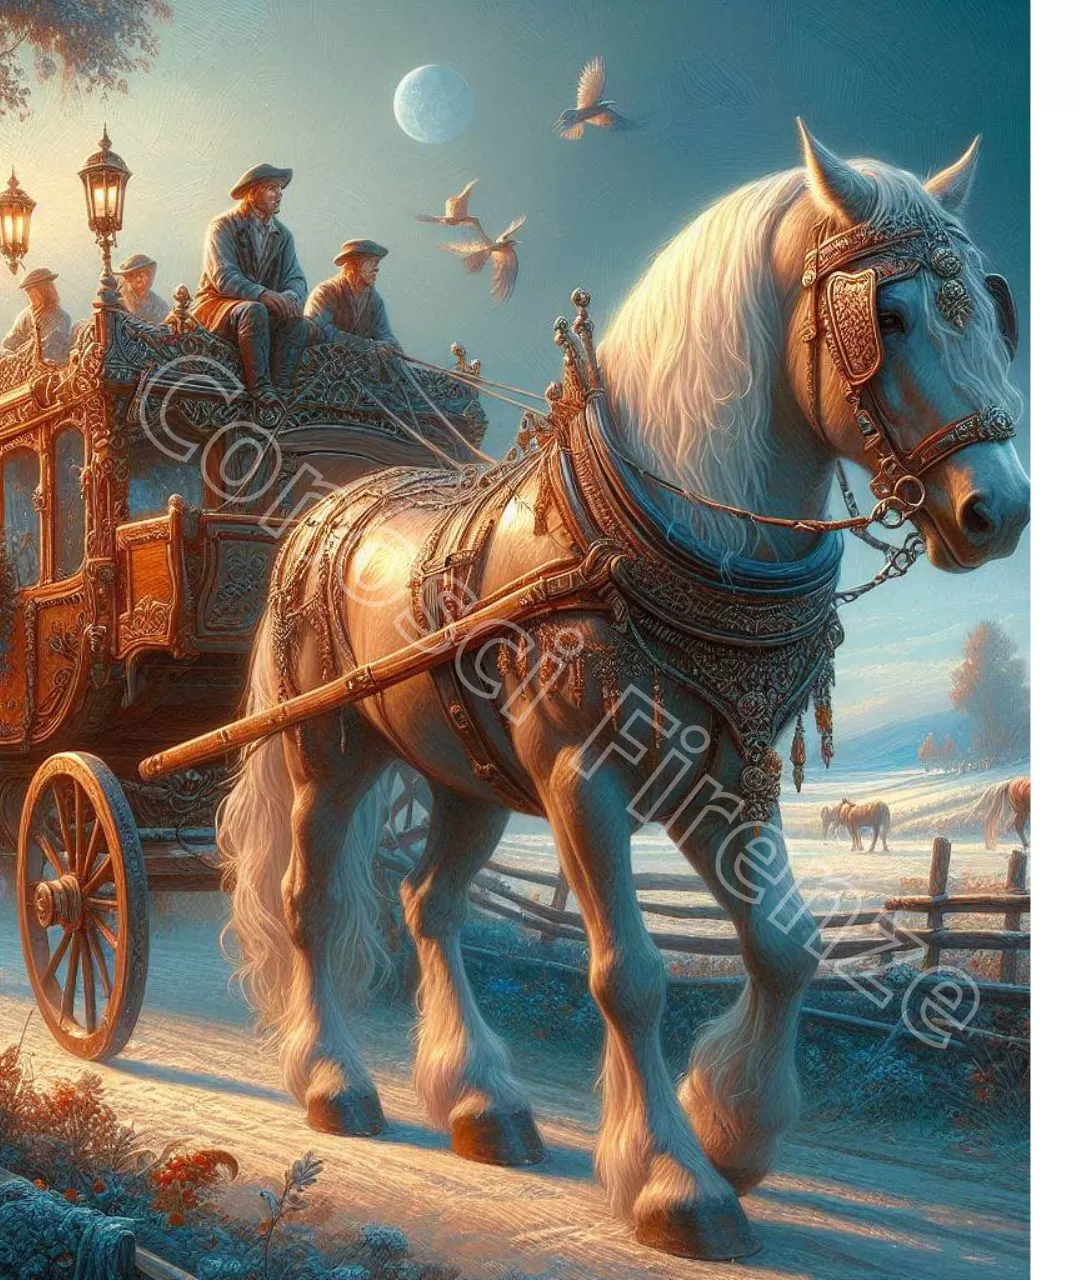 Il cavallo è il mezzo di trasporto della compagnia di saltimbanchi.